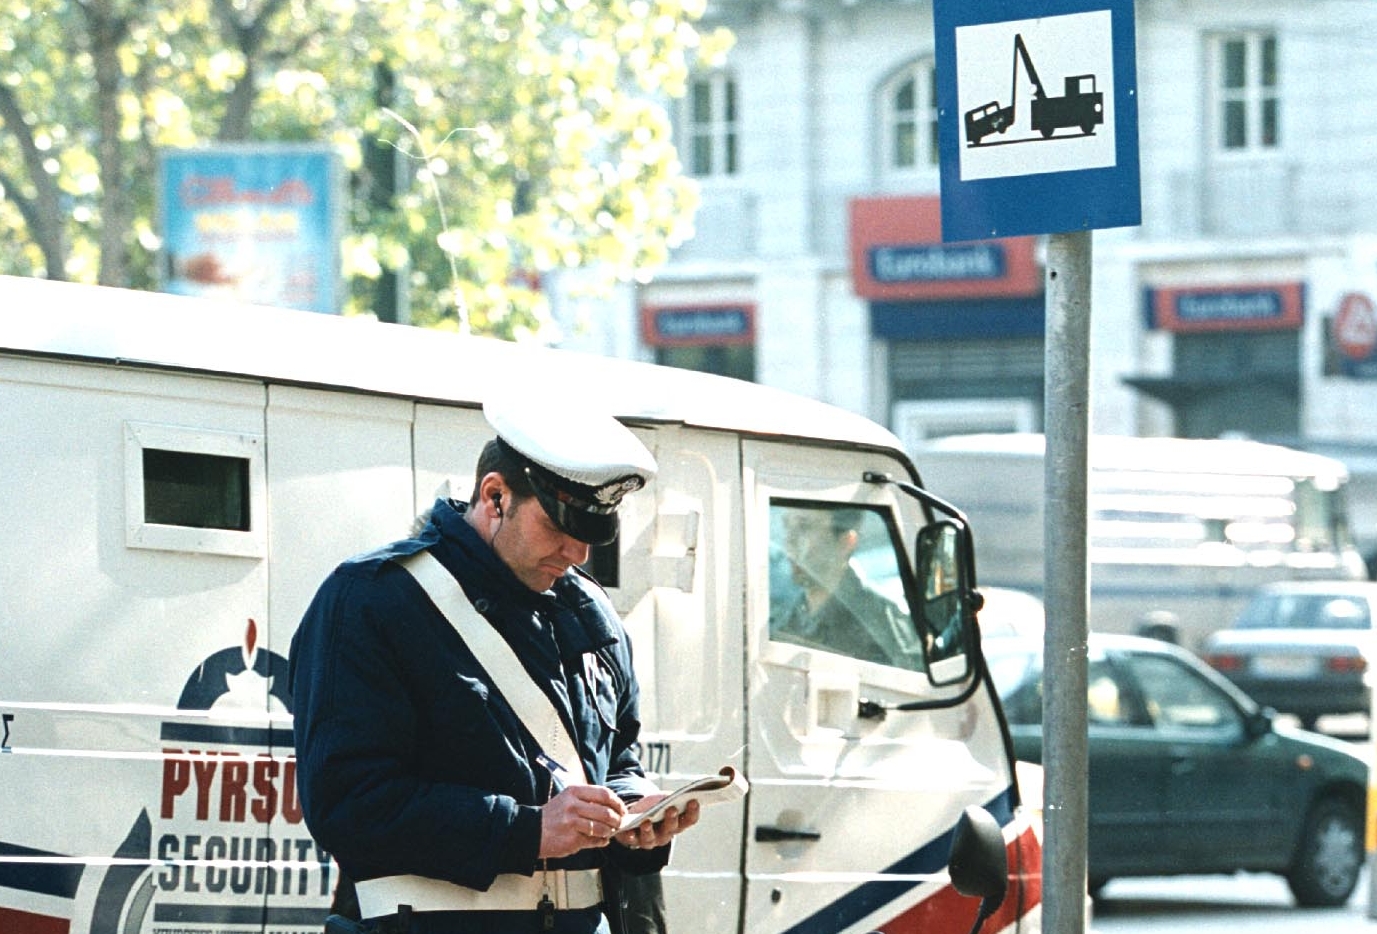 Αρση μέτρων: Κλήσεις με το… καλημέρα για παράνομα παρκαρίσματα στη Θεσσαλονίκη